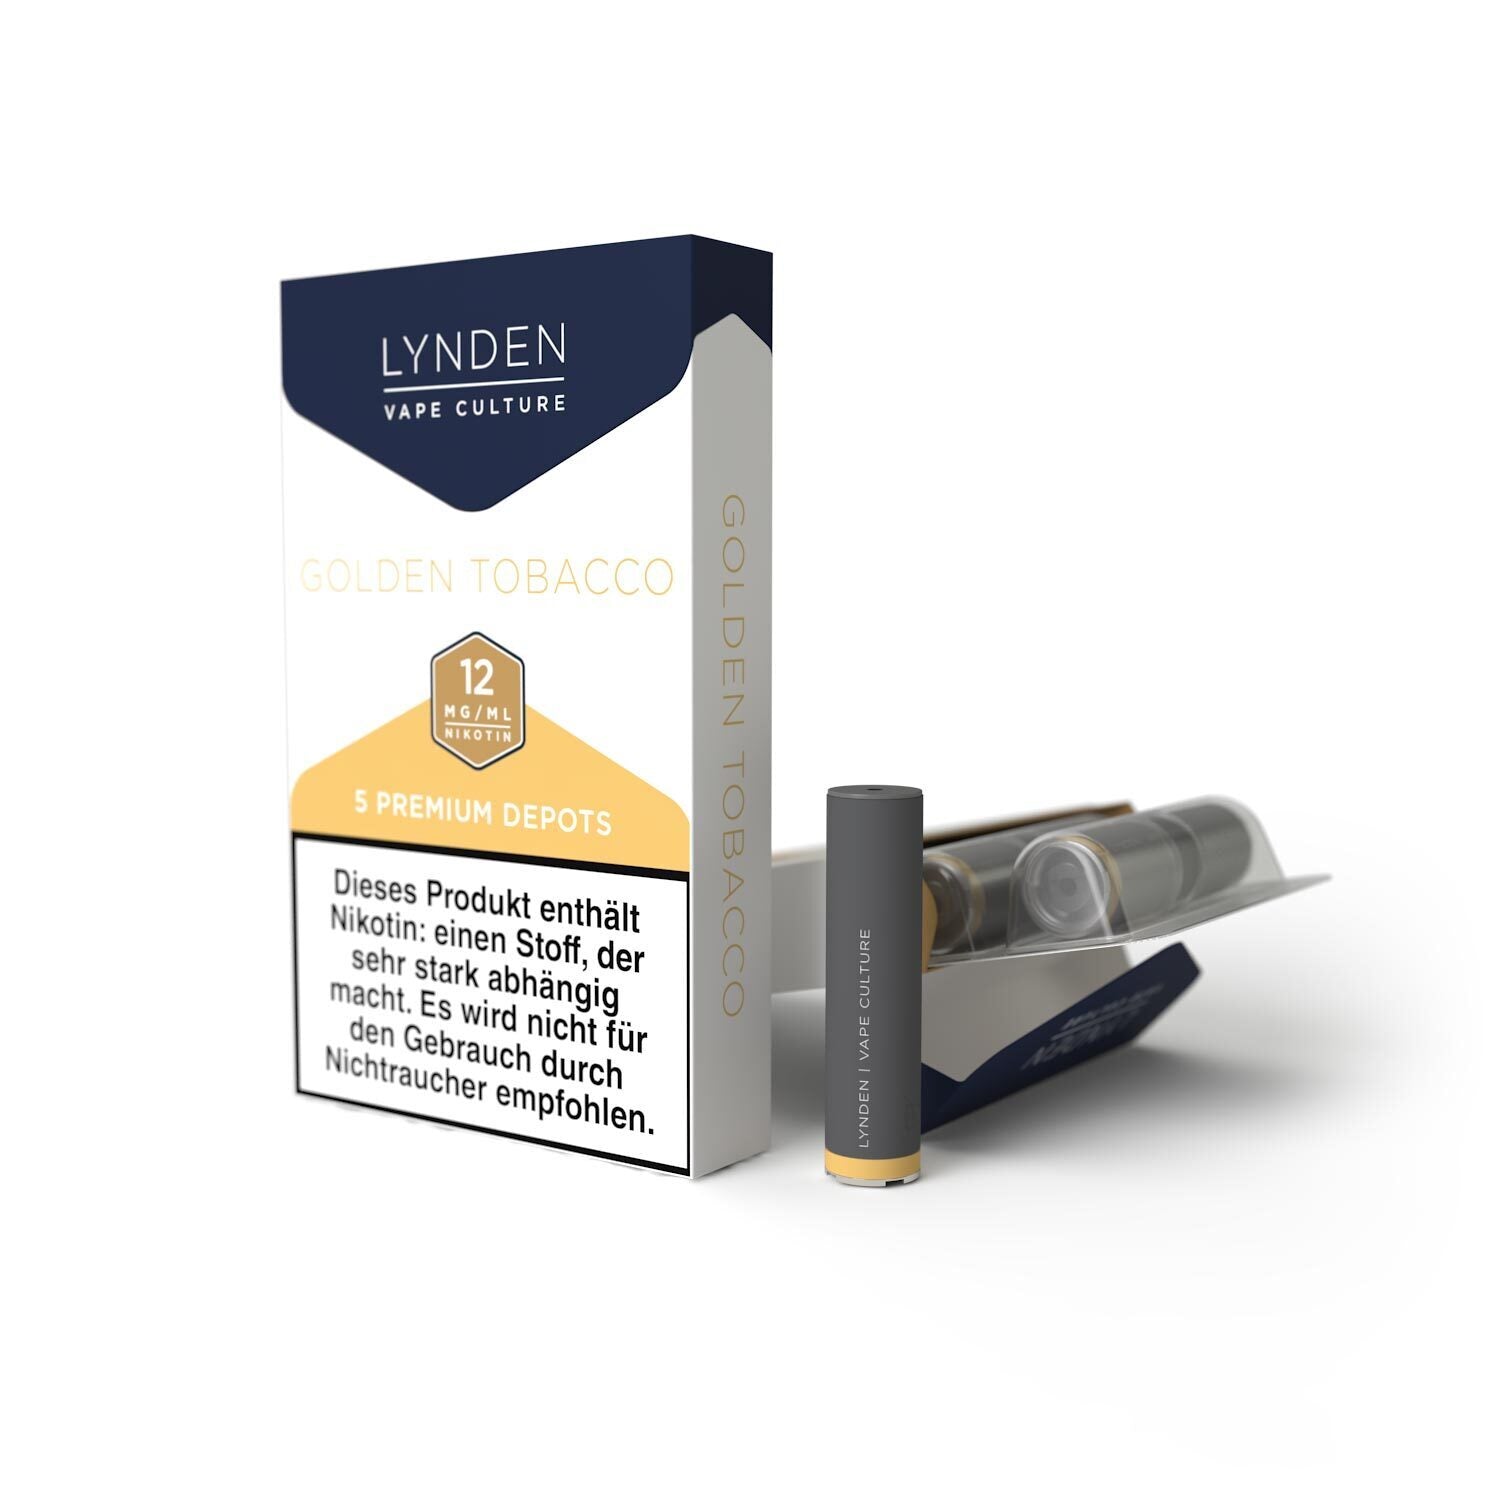 50-Vorratspack LYNDEN Premium Depots Golden Tobacco mit 250 Depots